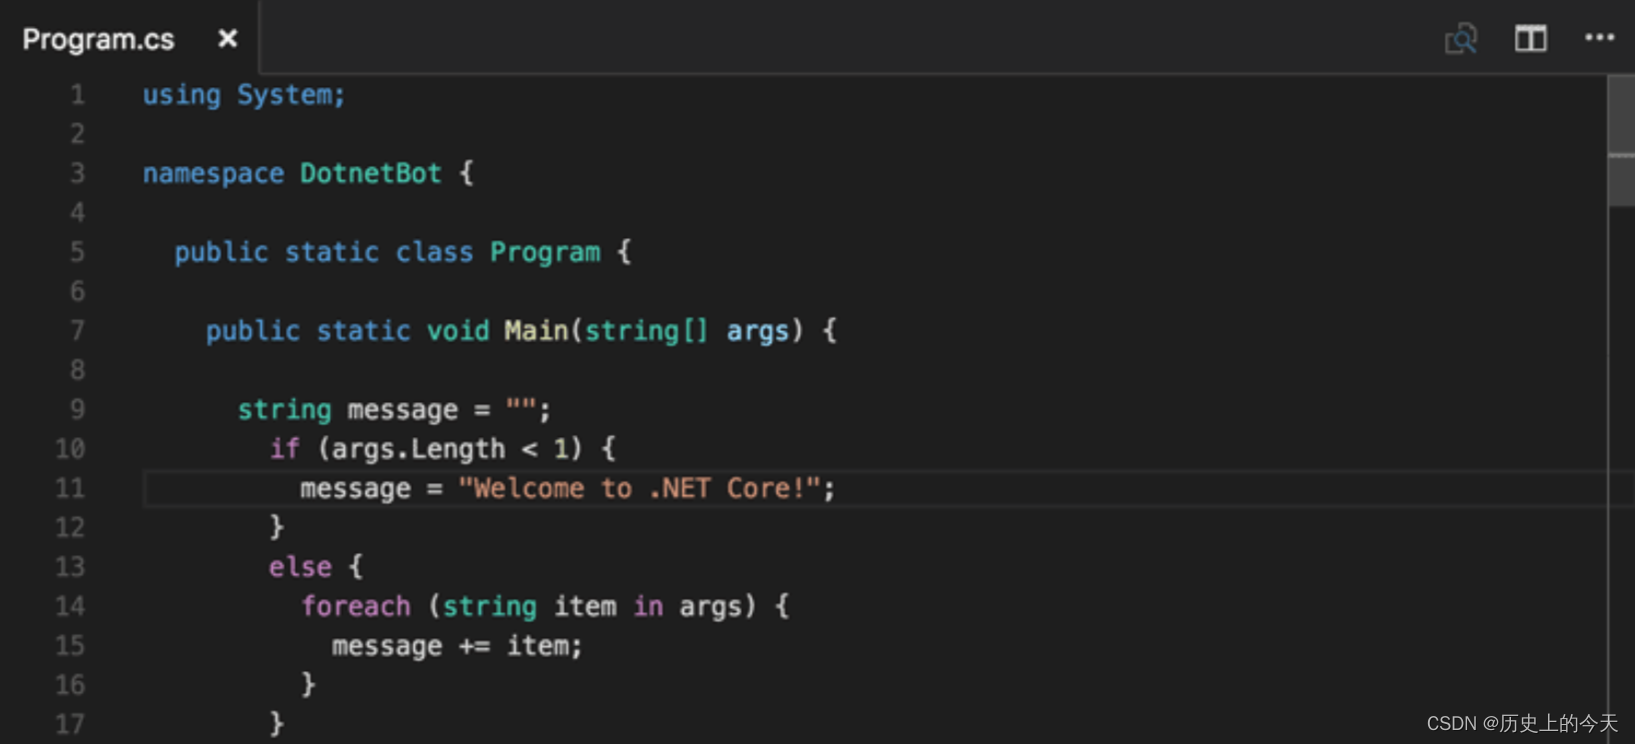 Main php c. C Sharp код. Программирование c#. Язык программирования си Шарп. Образец кода на c#.